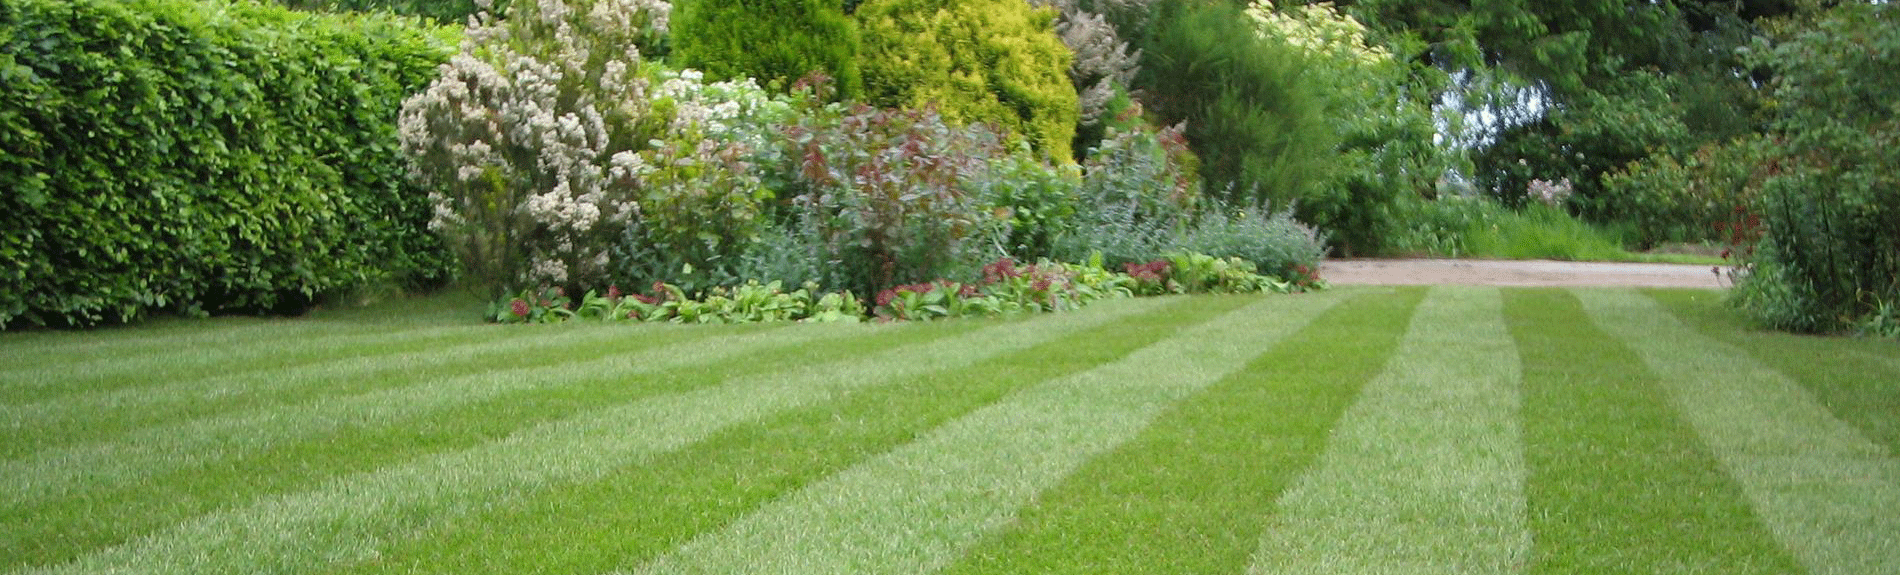 Holganix Organic Lawn Fertilizer